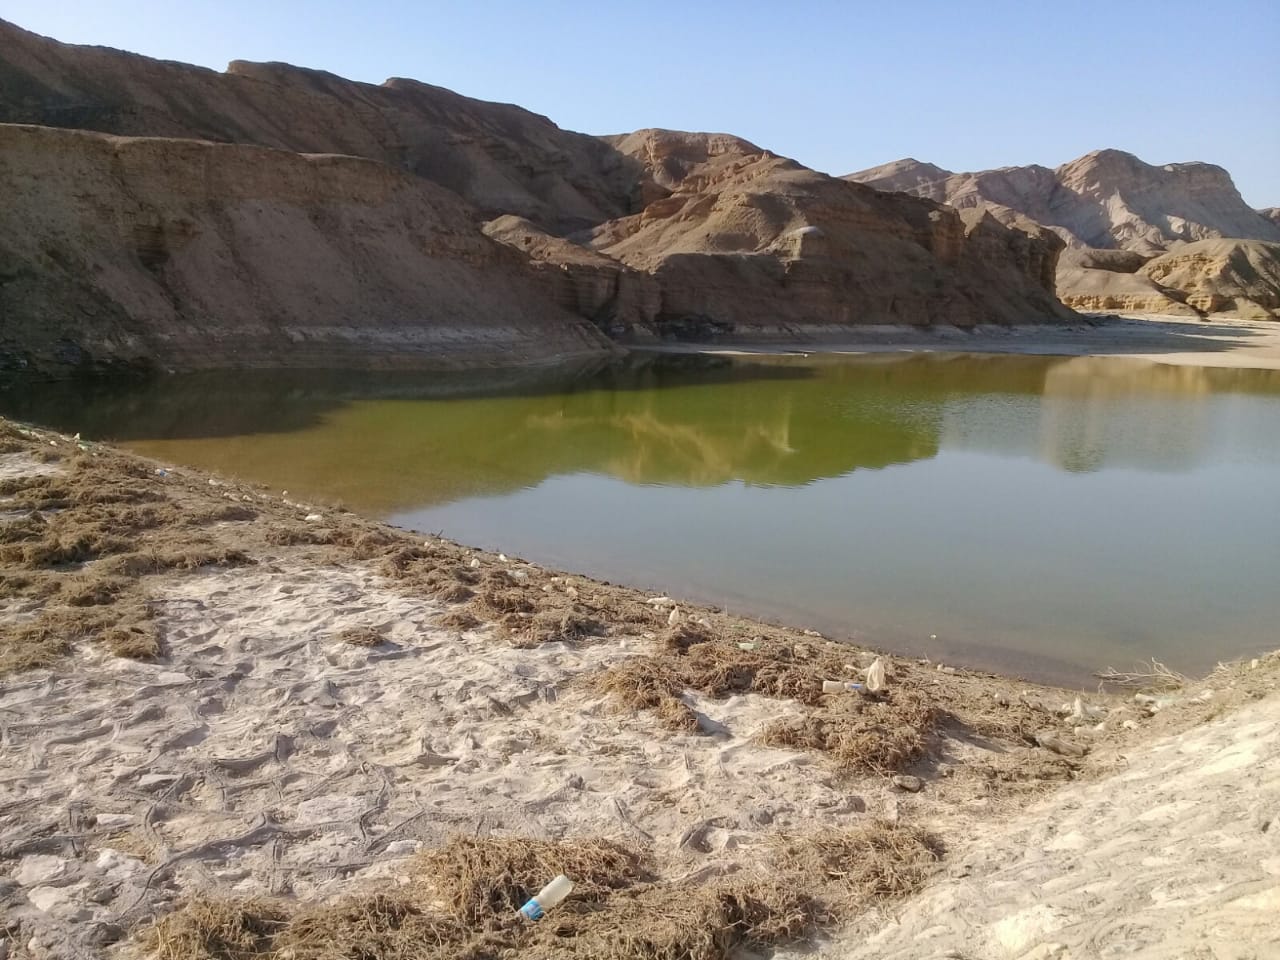    إنشاء سدين وبحيرة تخزينية بمدينة أبوزنيمة لحماية  750 أسرة من أخطار السيول